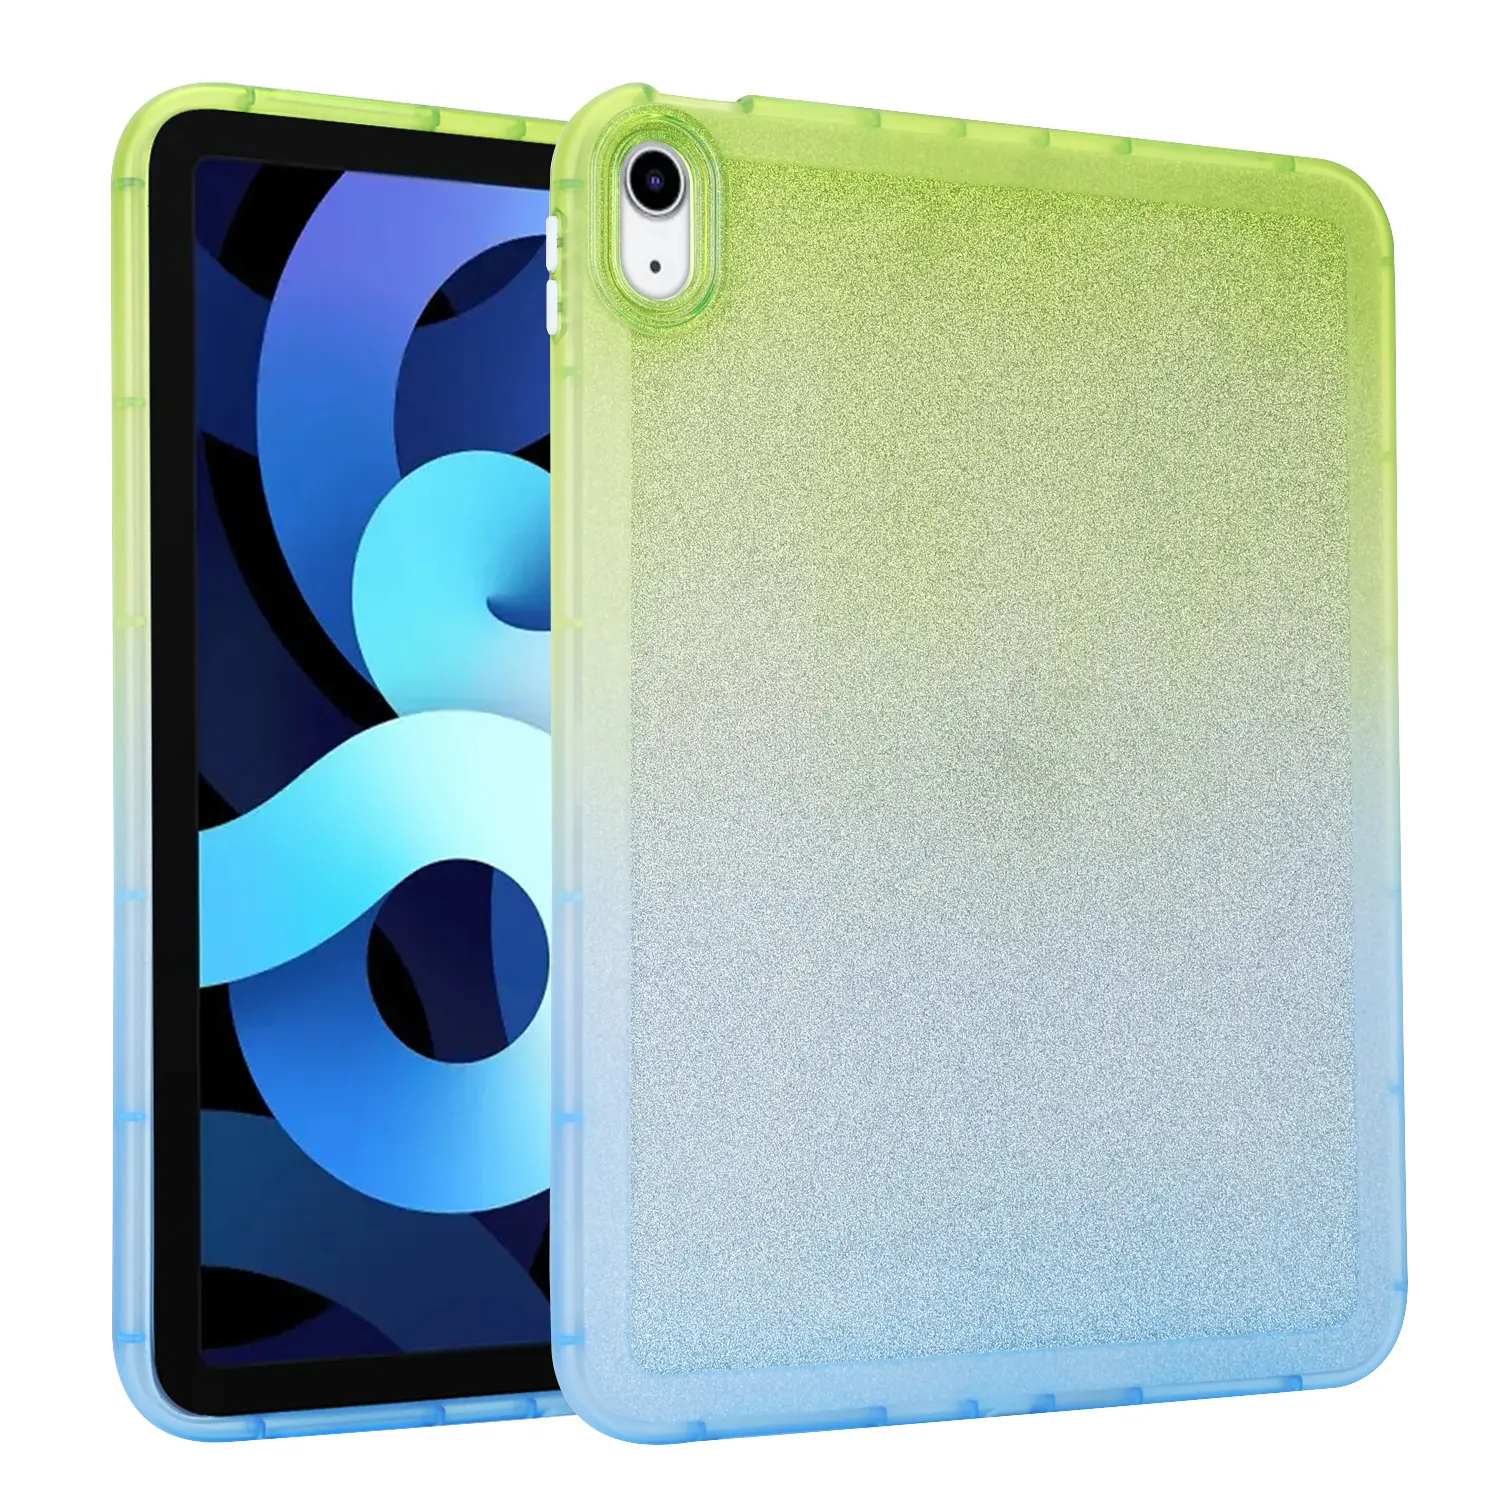 حافظة فاخرة لجهاز iPad Pro غطاء تابلت واقي بالكامل مضاد للصدمات بألوان متدرجة قوس قزح لجهاز iPad 10 mini 6